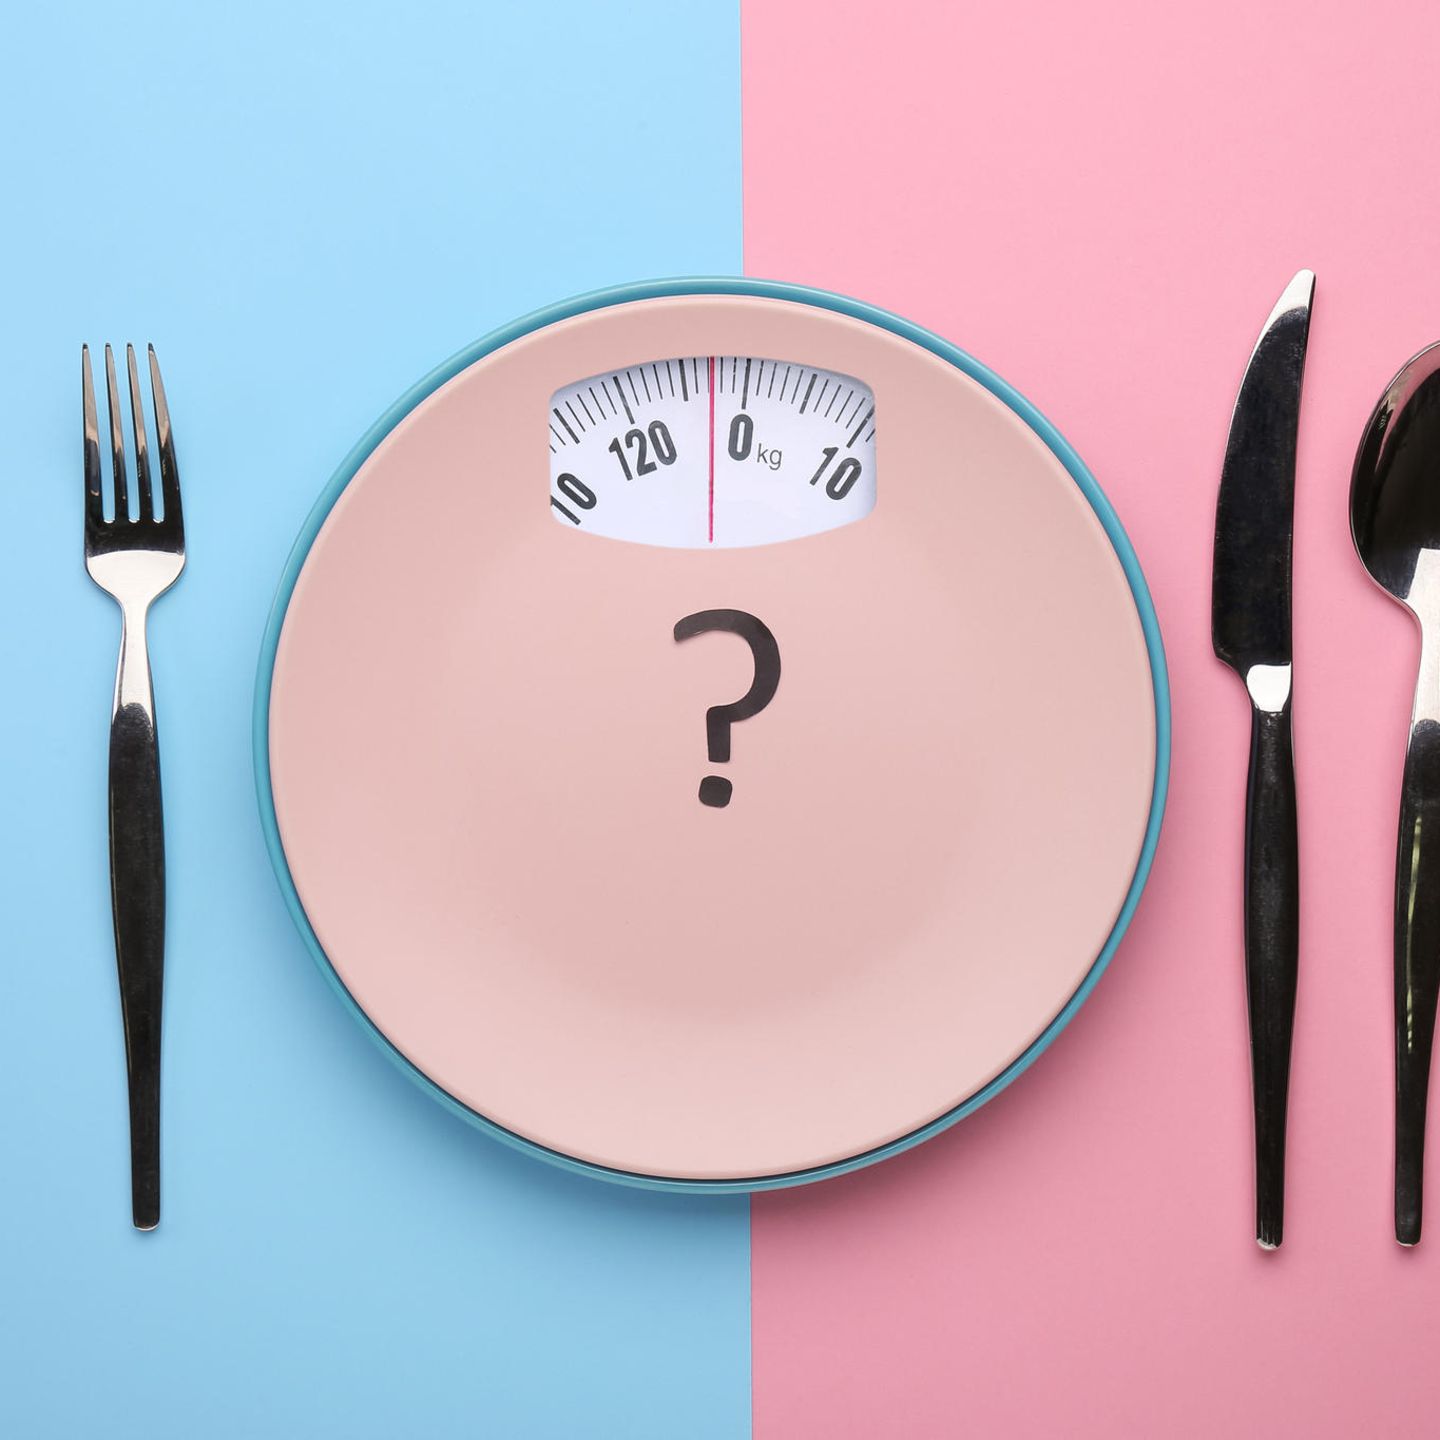 Einige Ernährungsmythen halten sich hartnäcktig - etwa dass Fett dick machen würde. Wir haben zehn Mythen gecheckt 